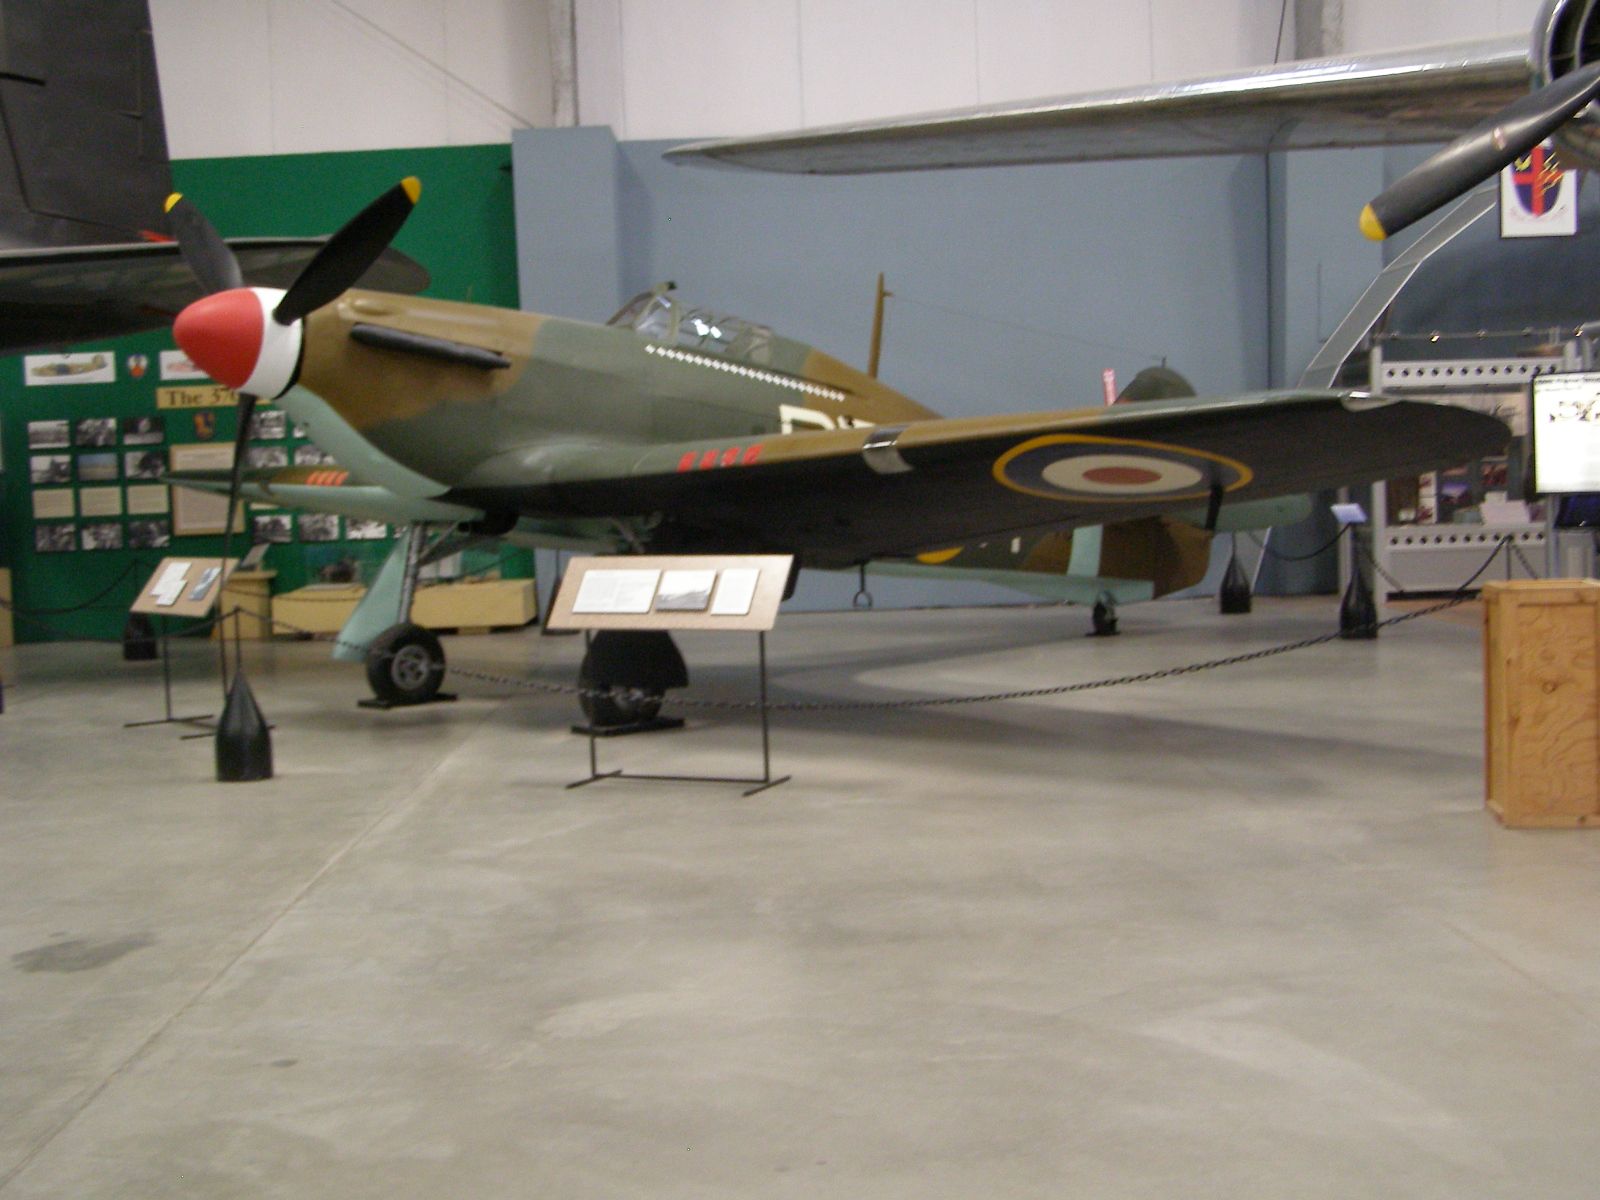 Hawker MK.II Hurricane